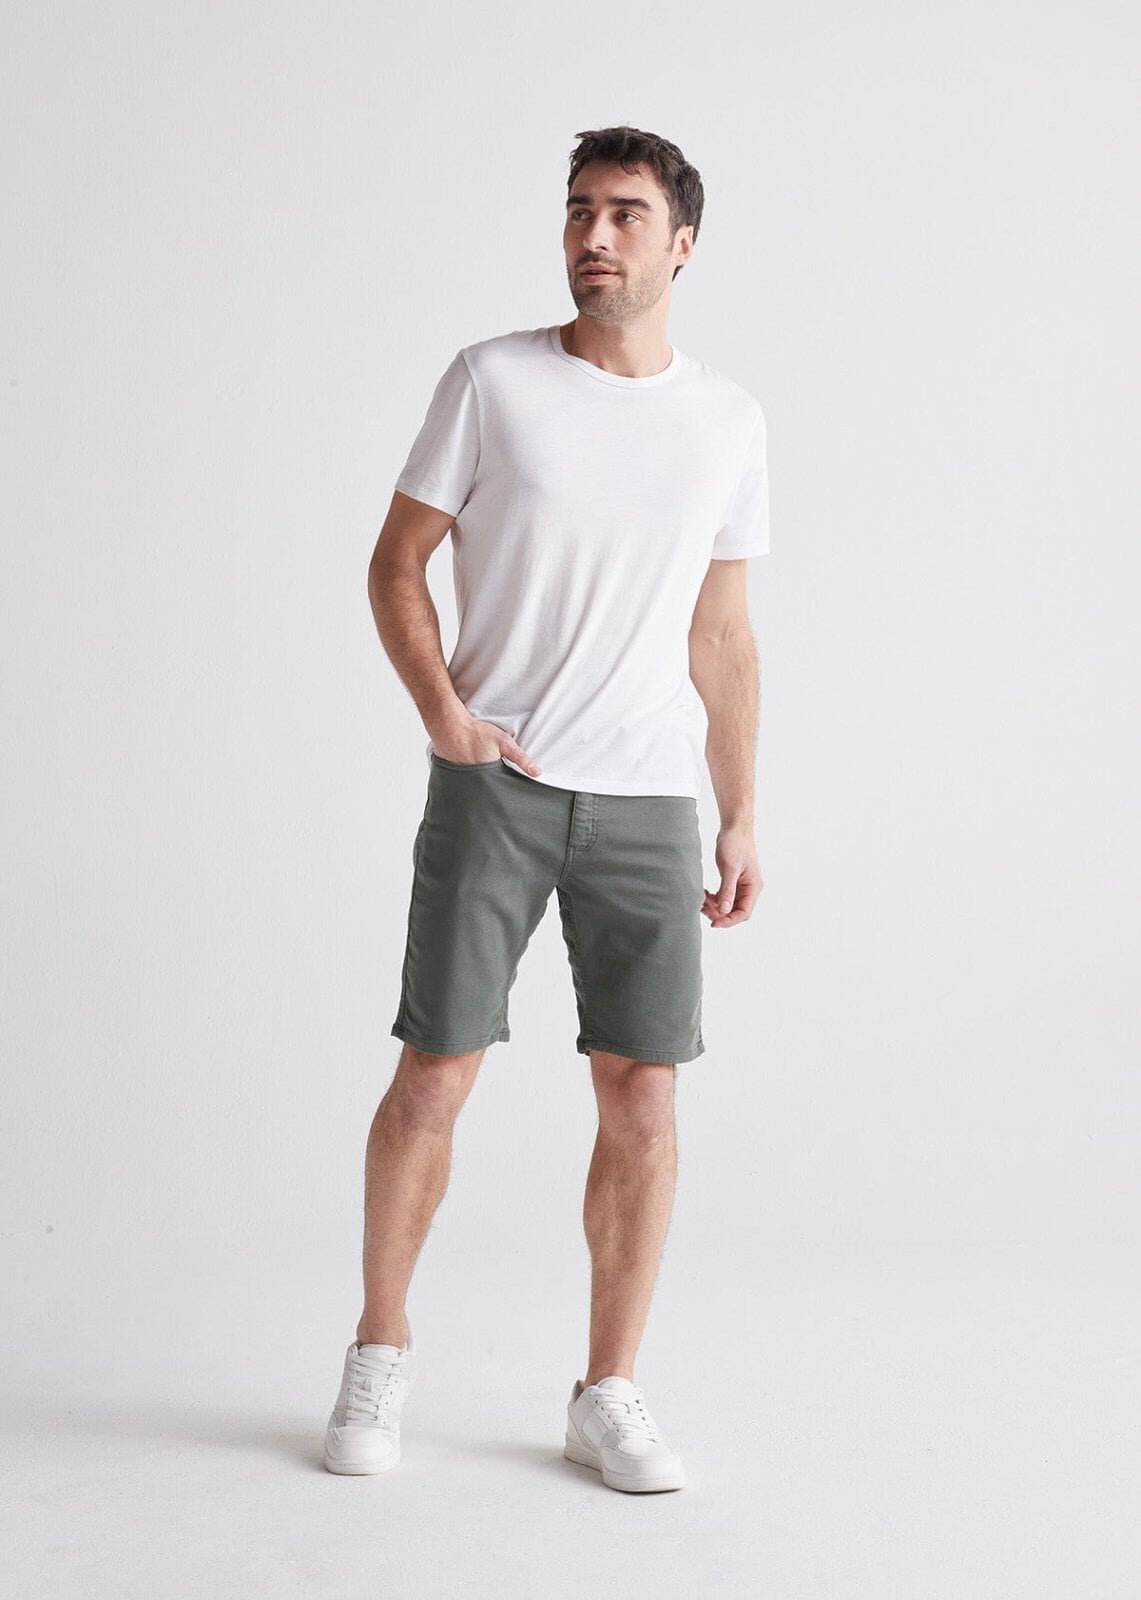 Men's Grey Slim Fit Stretch Short Full Body